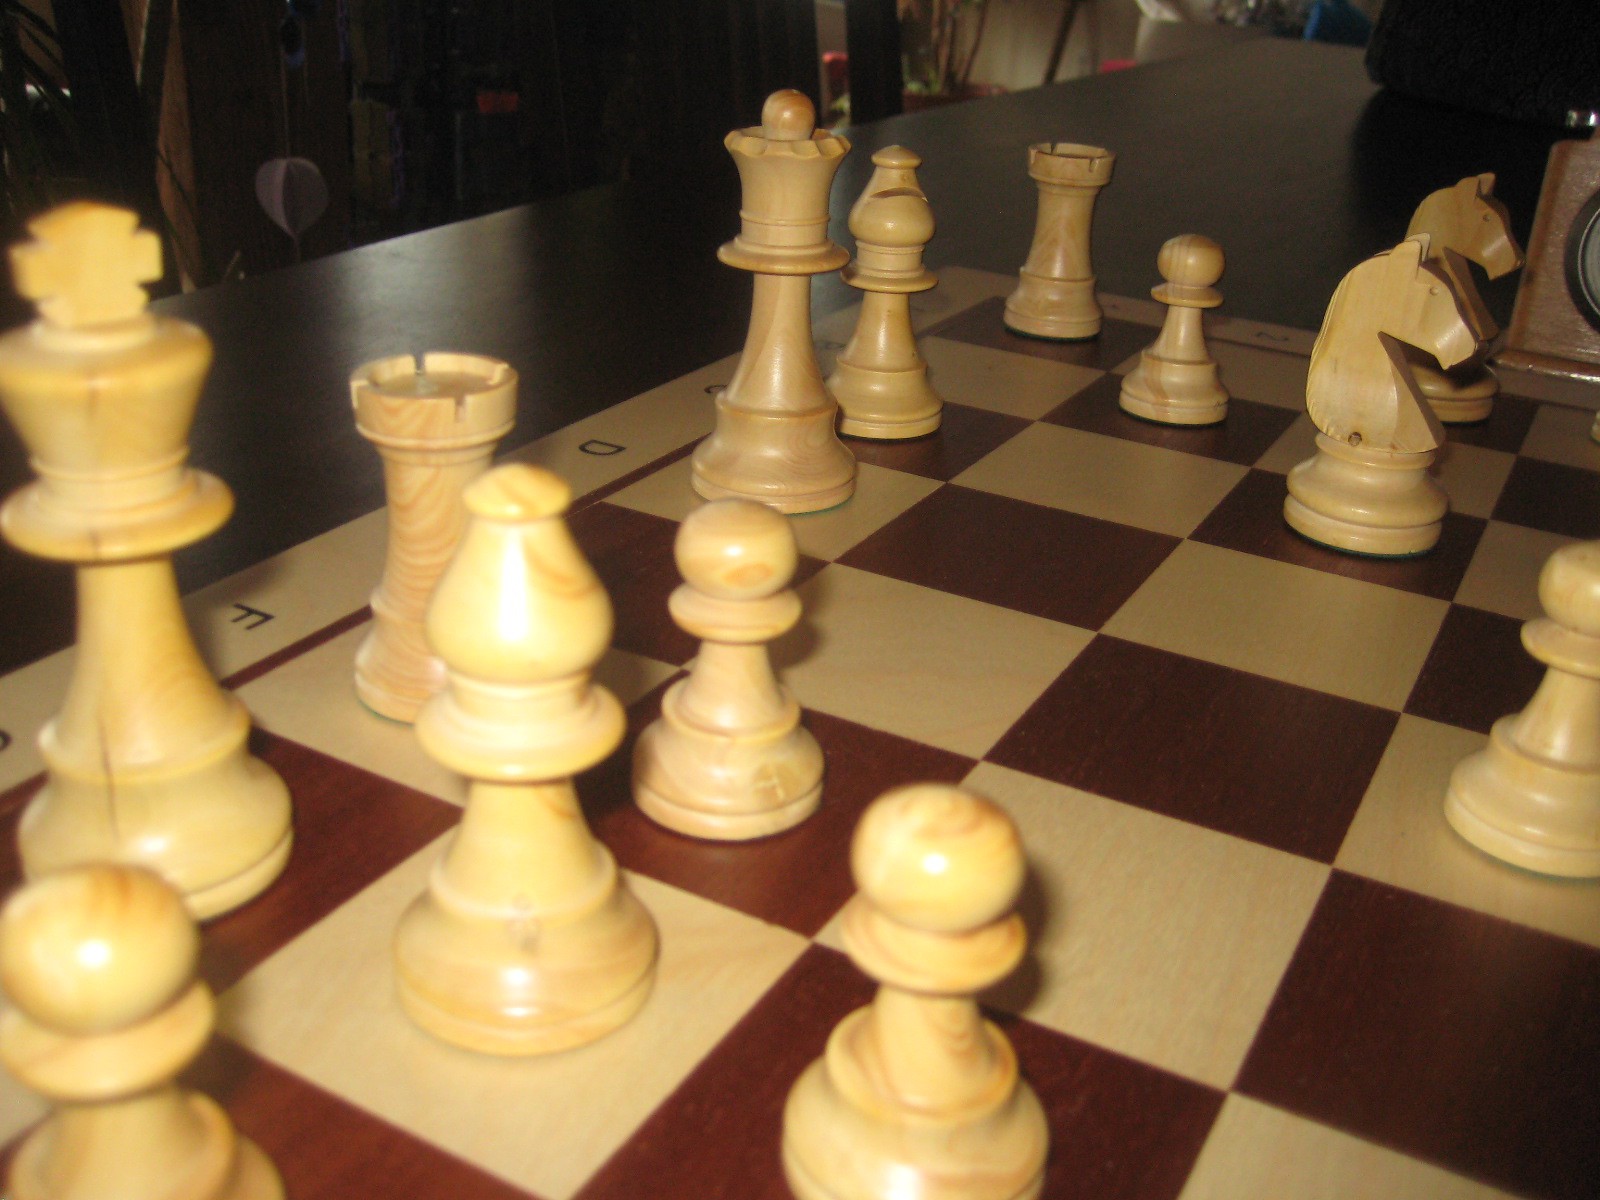 Karpov lambastes FIDE (again) - The Chess Drum